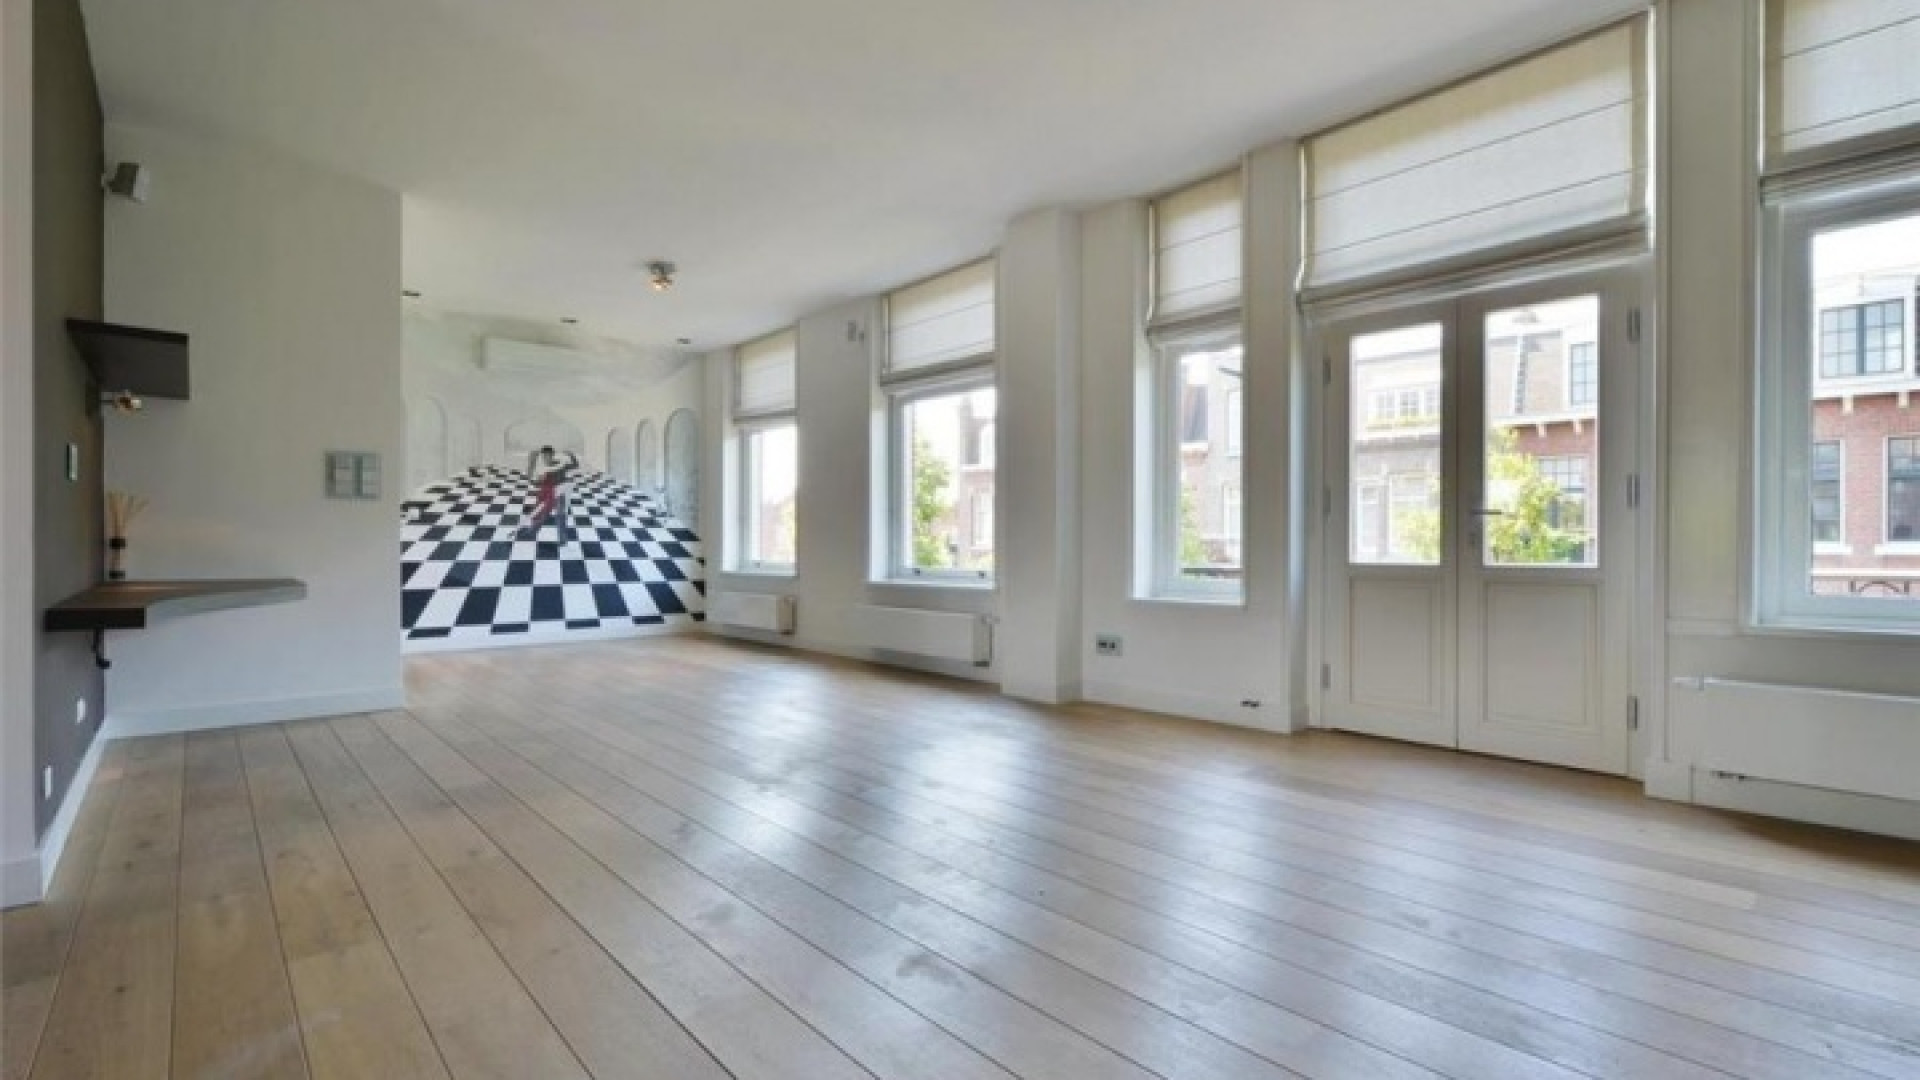 Frank Rijkaard vindt huurder voor dit zeer luxe appartement met jacuzzi op dakterras. Zie foto's 6